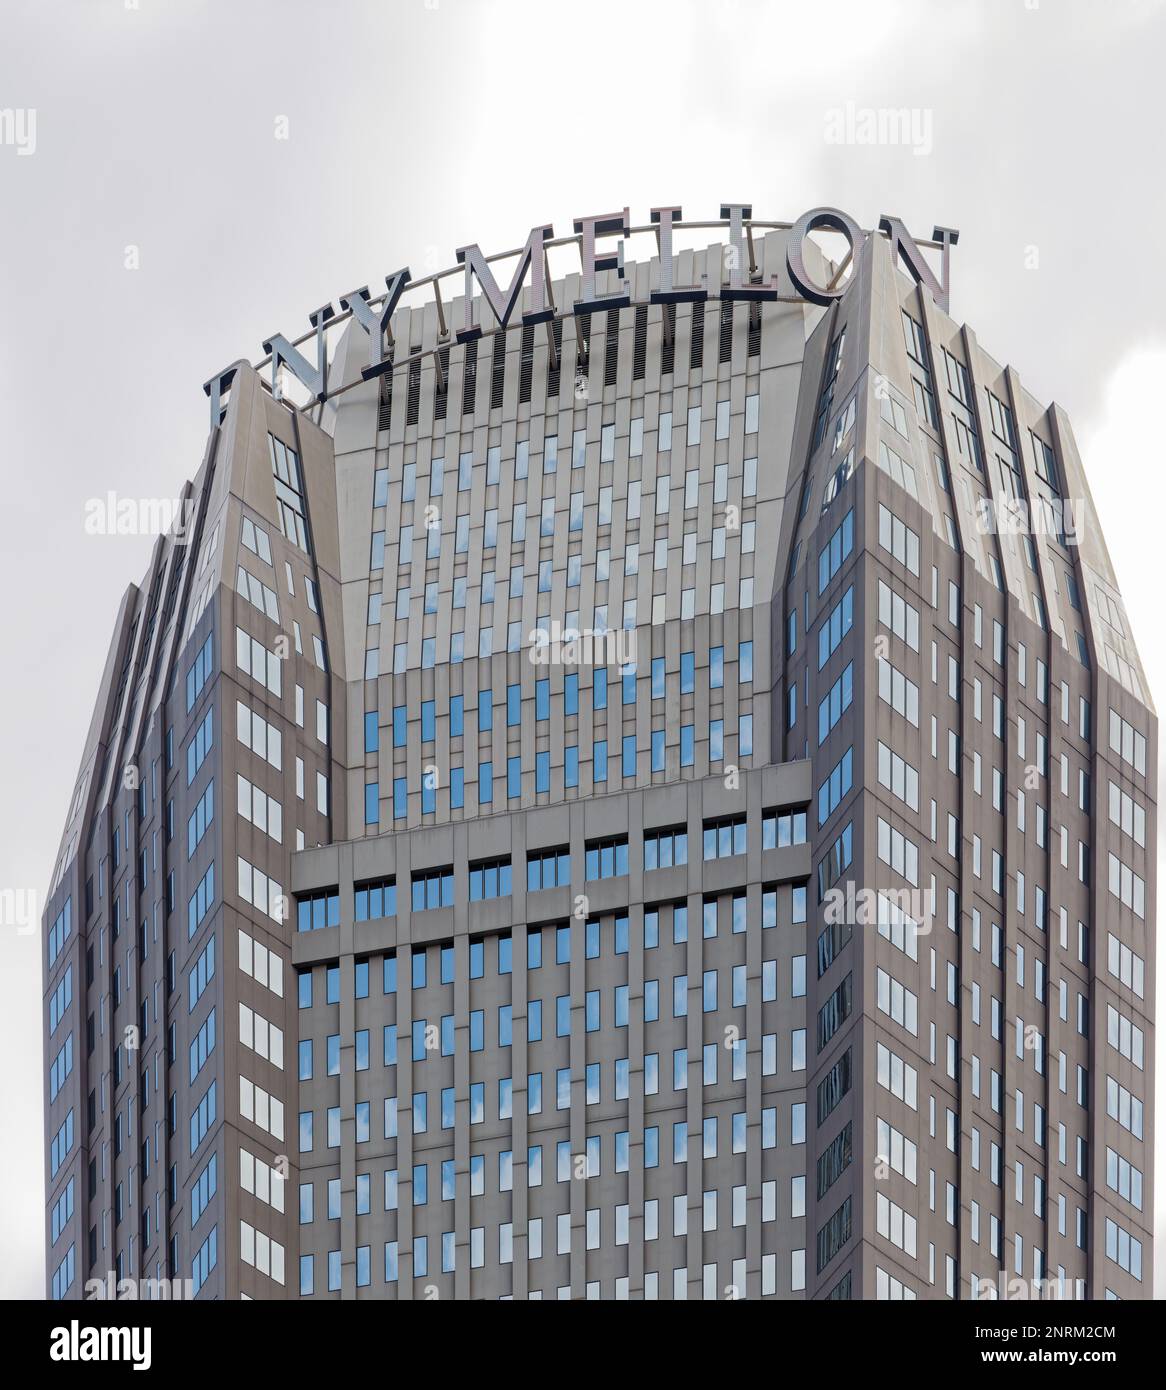 Pittsburgh Downtown: Das elegante, postmoderne BNY Mellon Center verfügt über eine beschichtete Stahlfassade, die den Turm stützt. Südfassade. Stockfoto